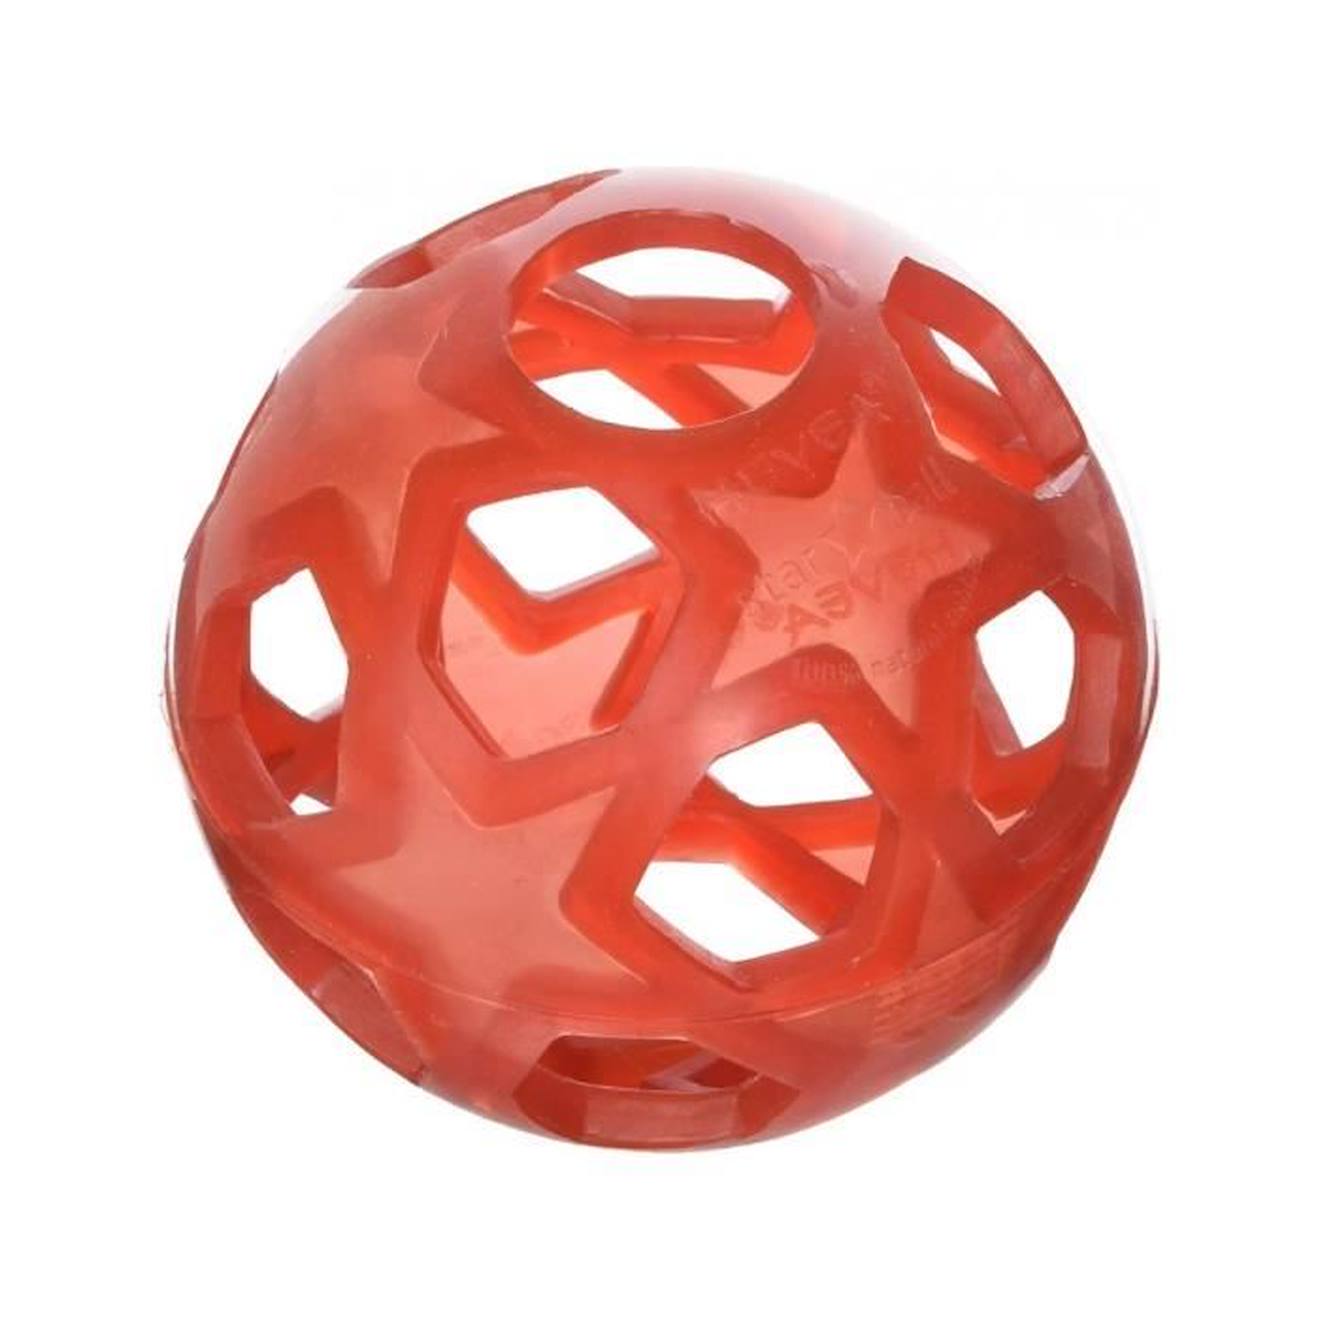 Jouet - Hevea - Star Ball En Caoutchouc Nature - Mixte - Rouge - A Partir De 3 Ans - Intérieur Rouge